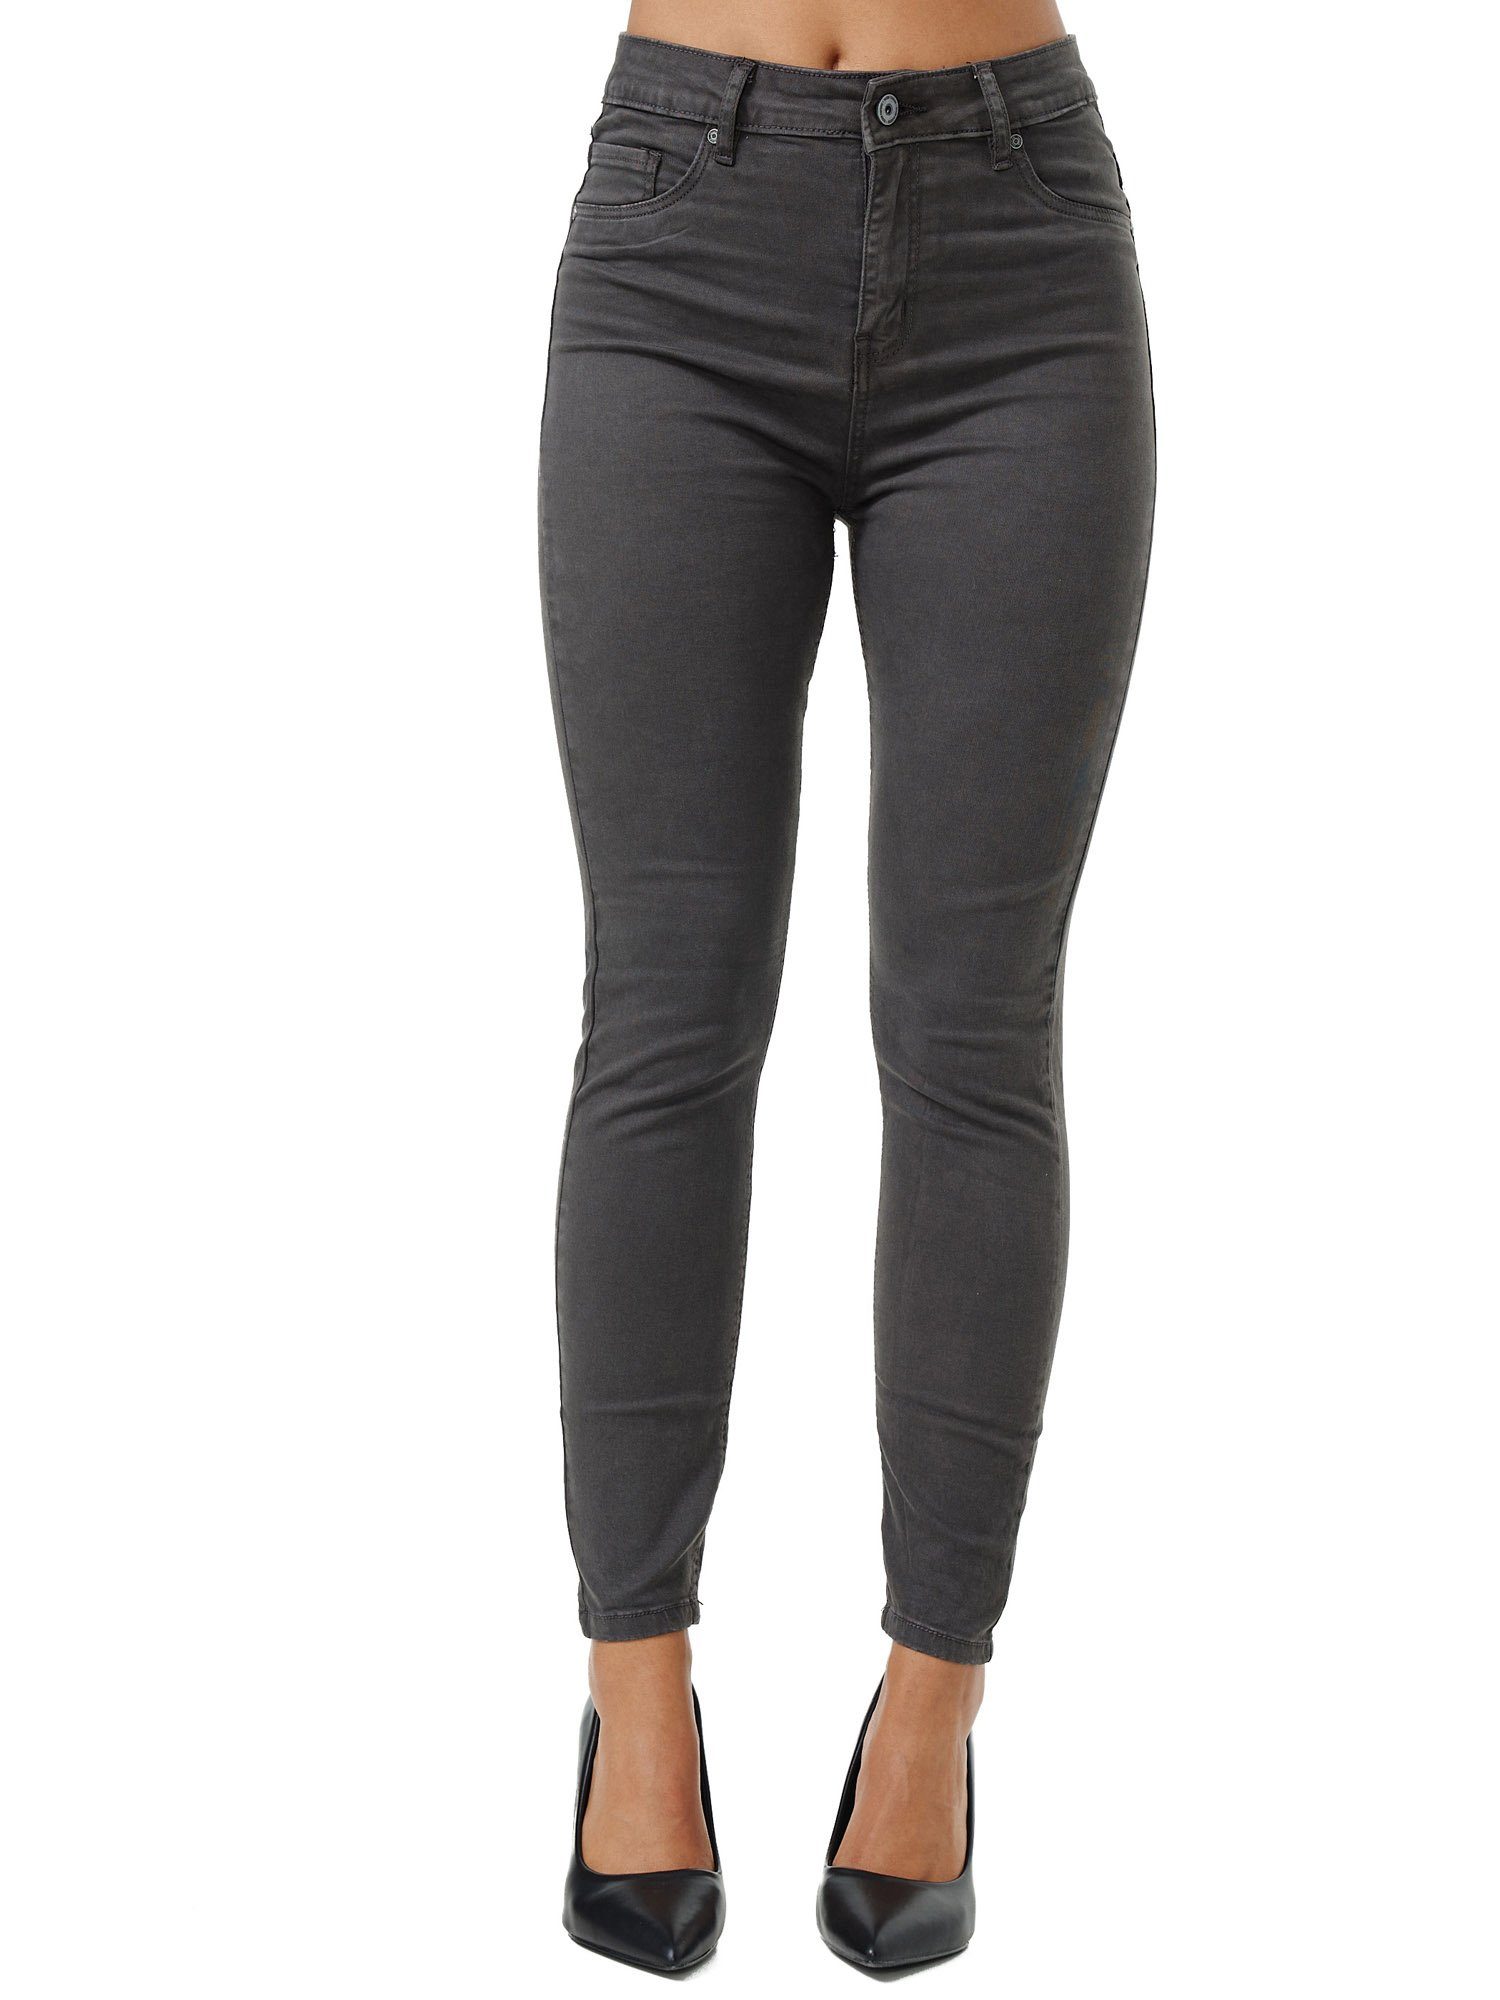 Tazzio Skinny-fit-Jeans F103 Damen Jeanshose anthrazit High Rise